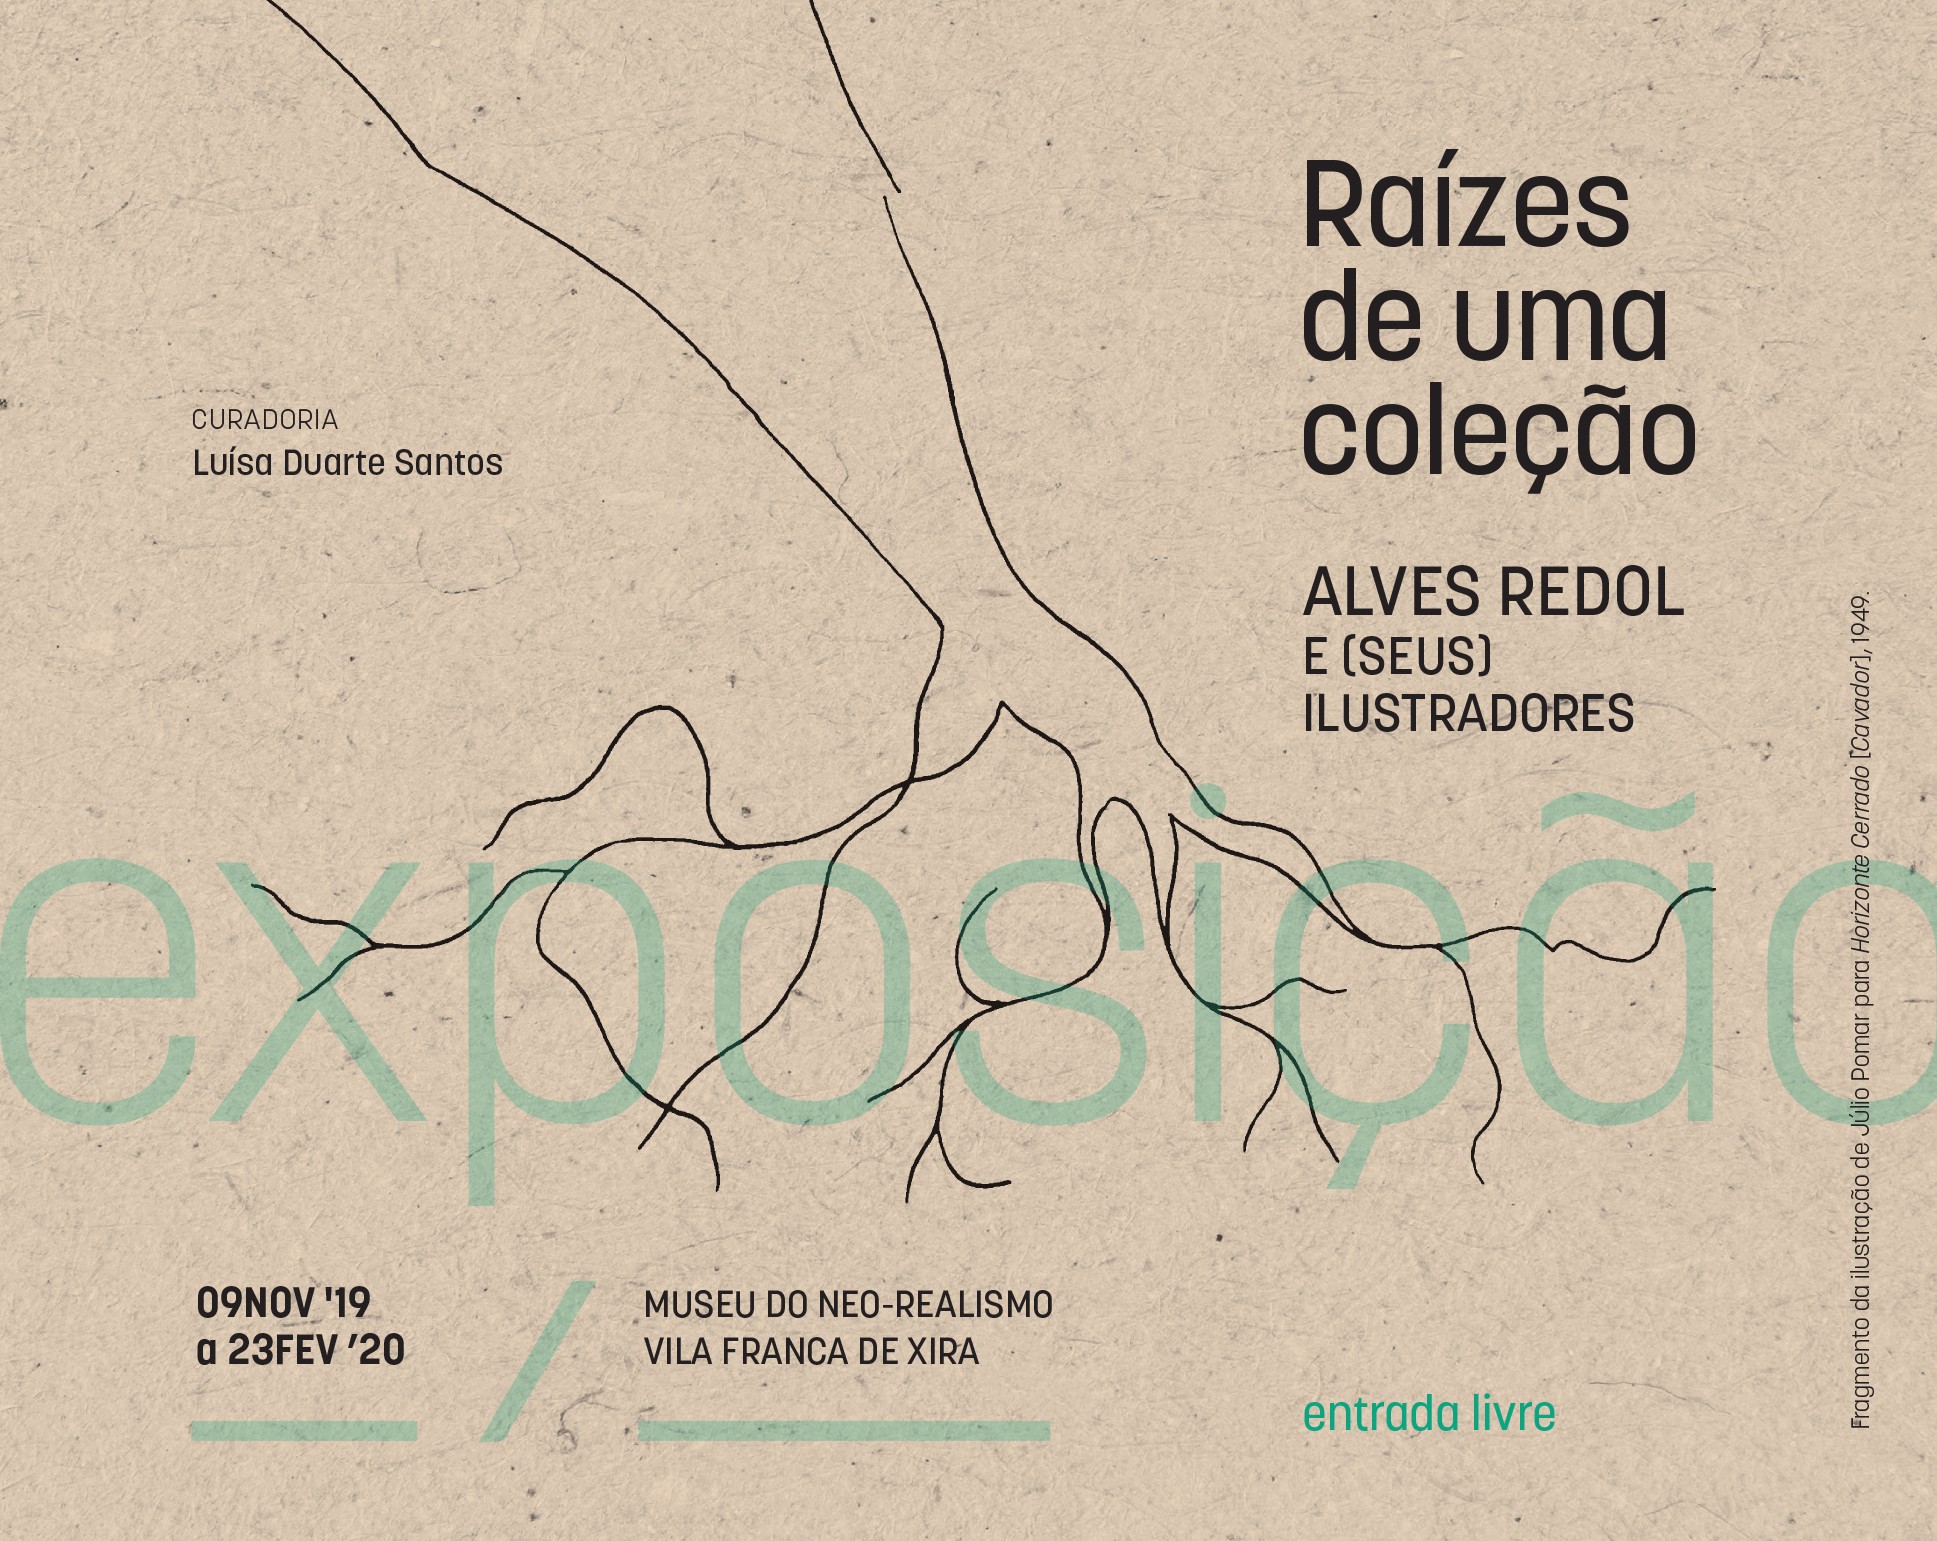 Raízes de uma coleção: Alves Redol e (seus) ilustradores